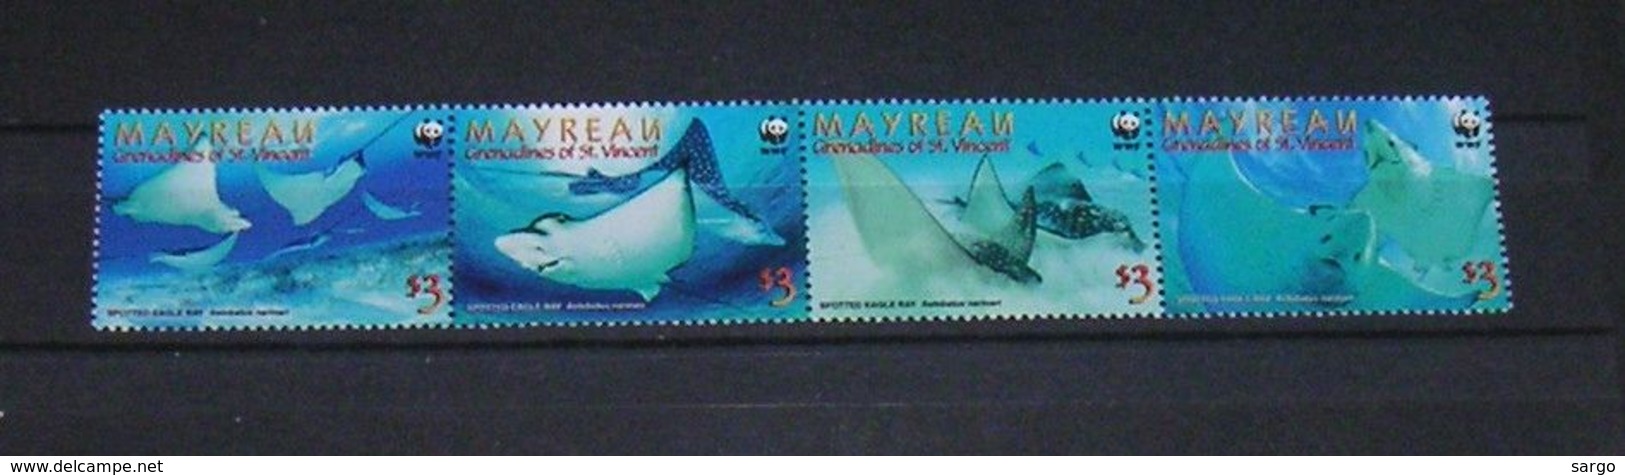 WWF -  MAYREAU - FISHES - 2009 - 4 V. - MNH  - MARINE LIFE - GIANT RAY - - Unused Stamps